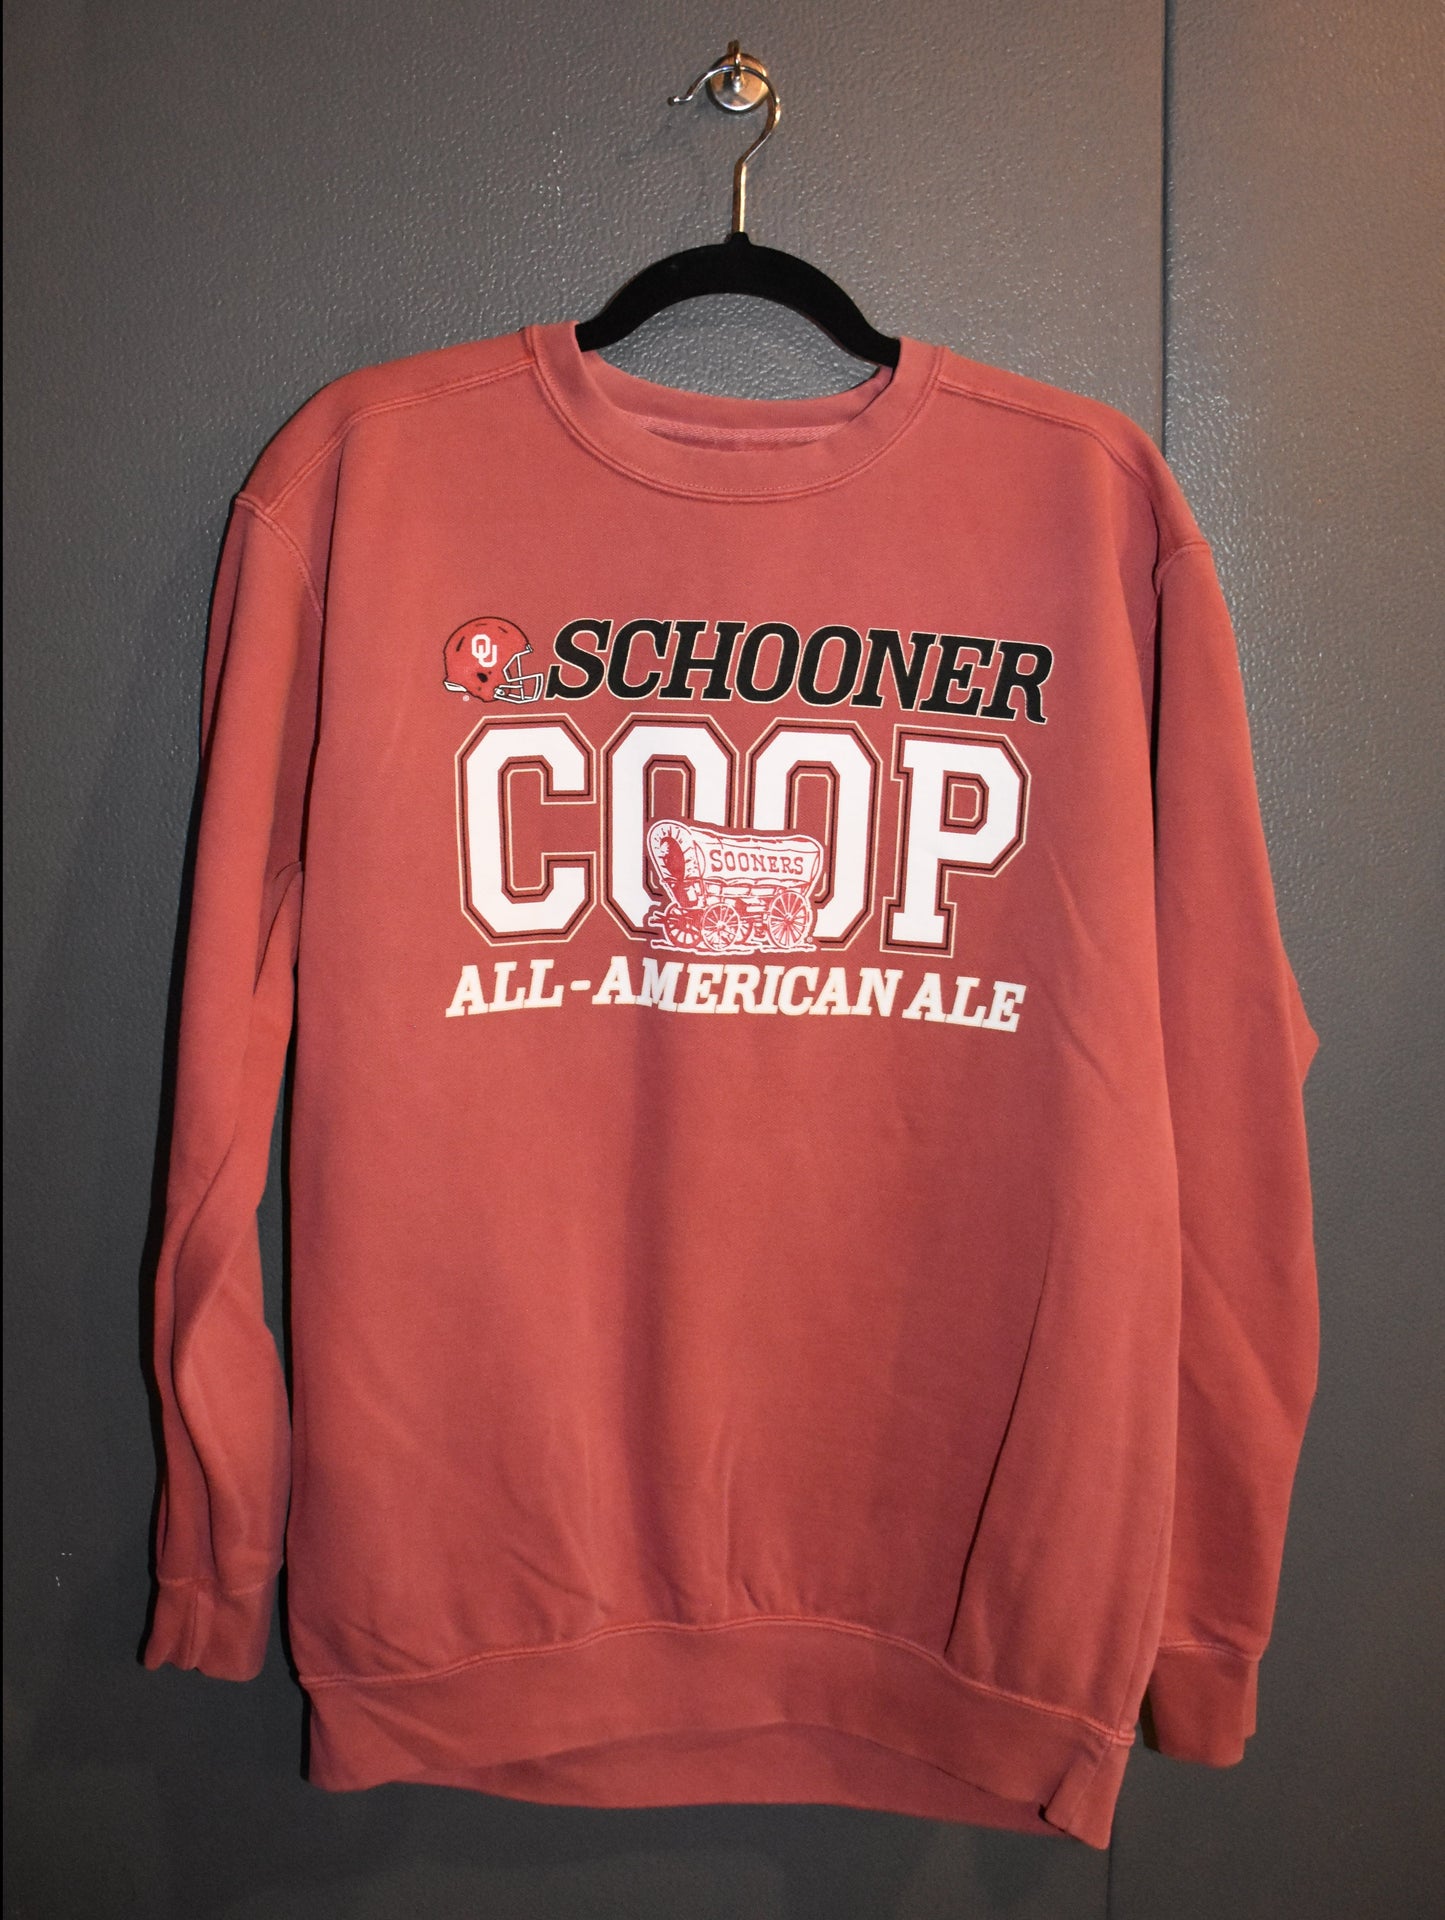 Schooner All-American Ale Crew Neck Sweatshirt